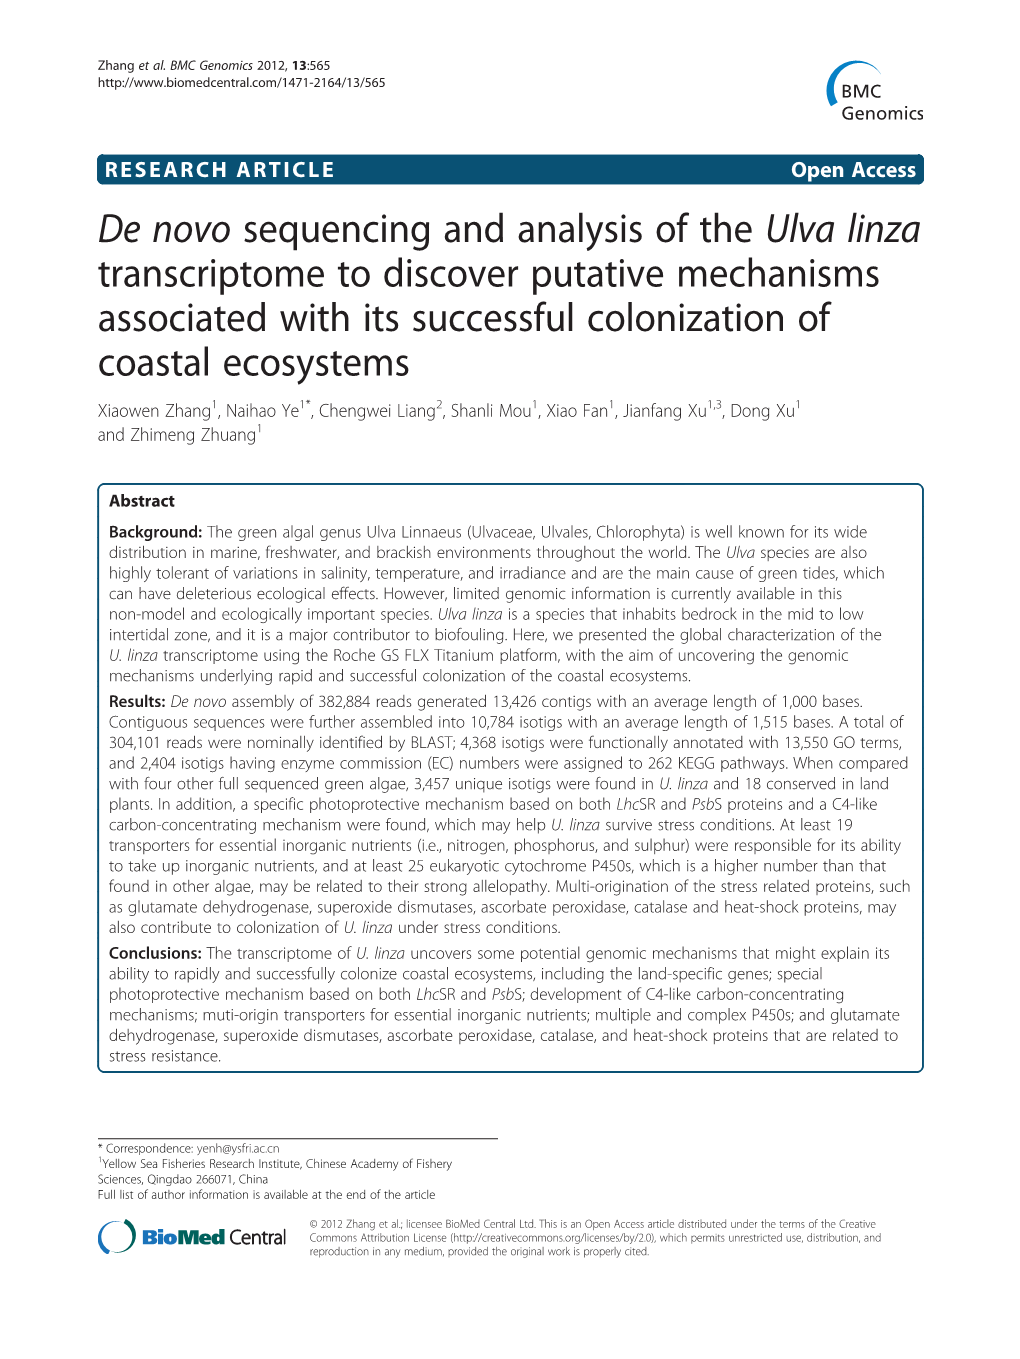 De Novo Sequencing and Analysis of the Ulva Linza Transcriptome To